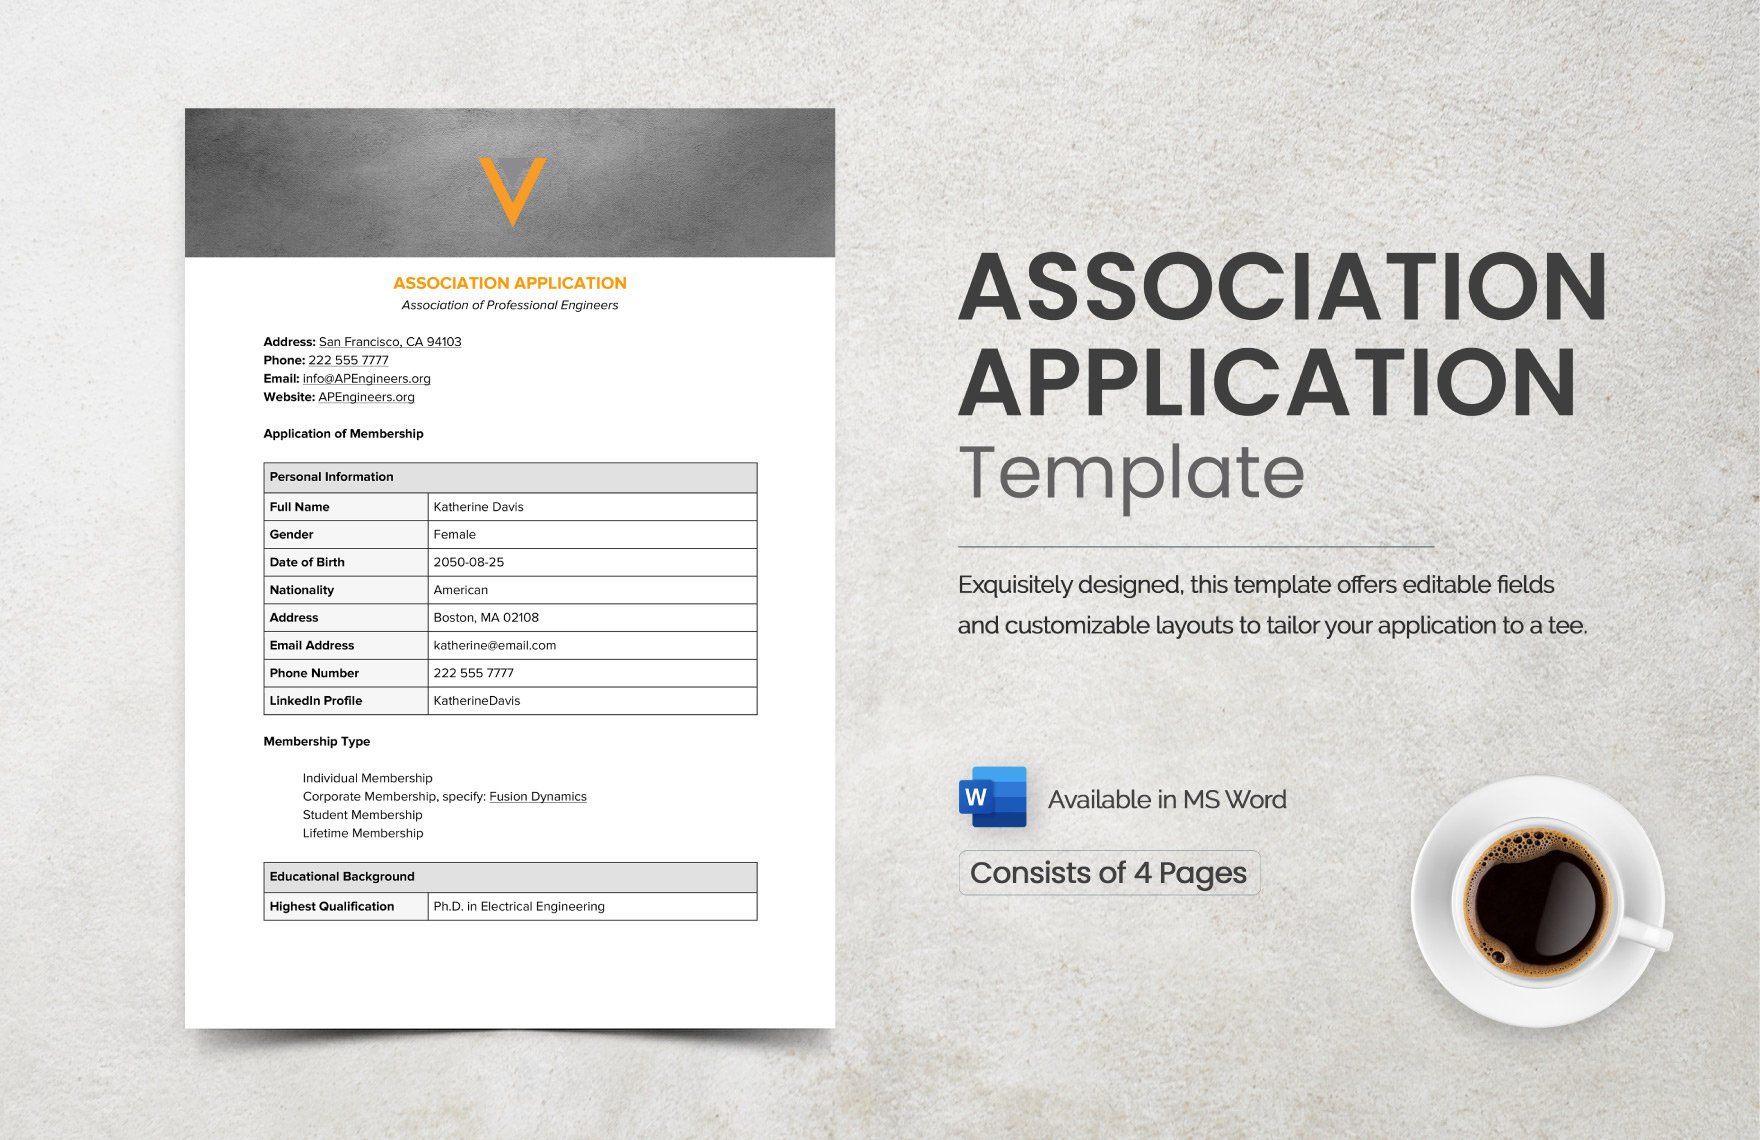 Association Application Template